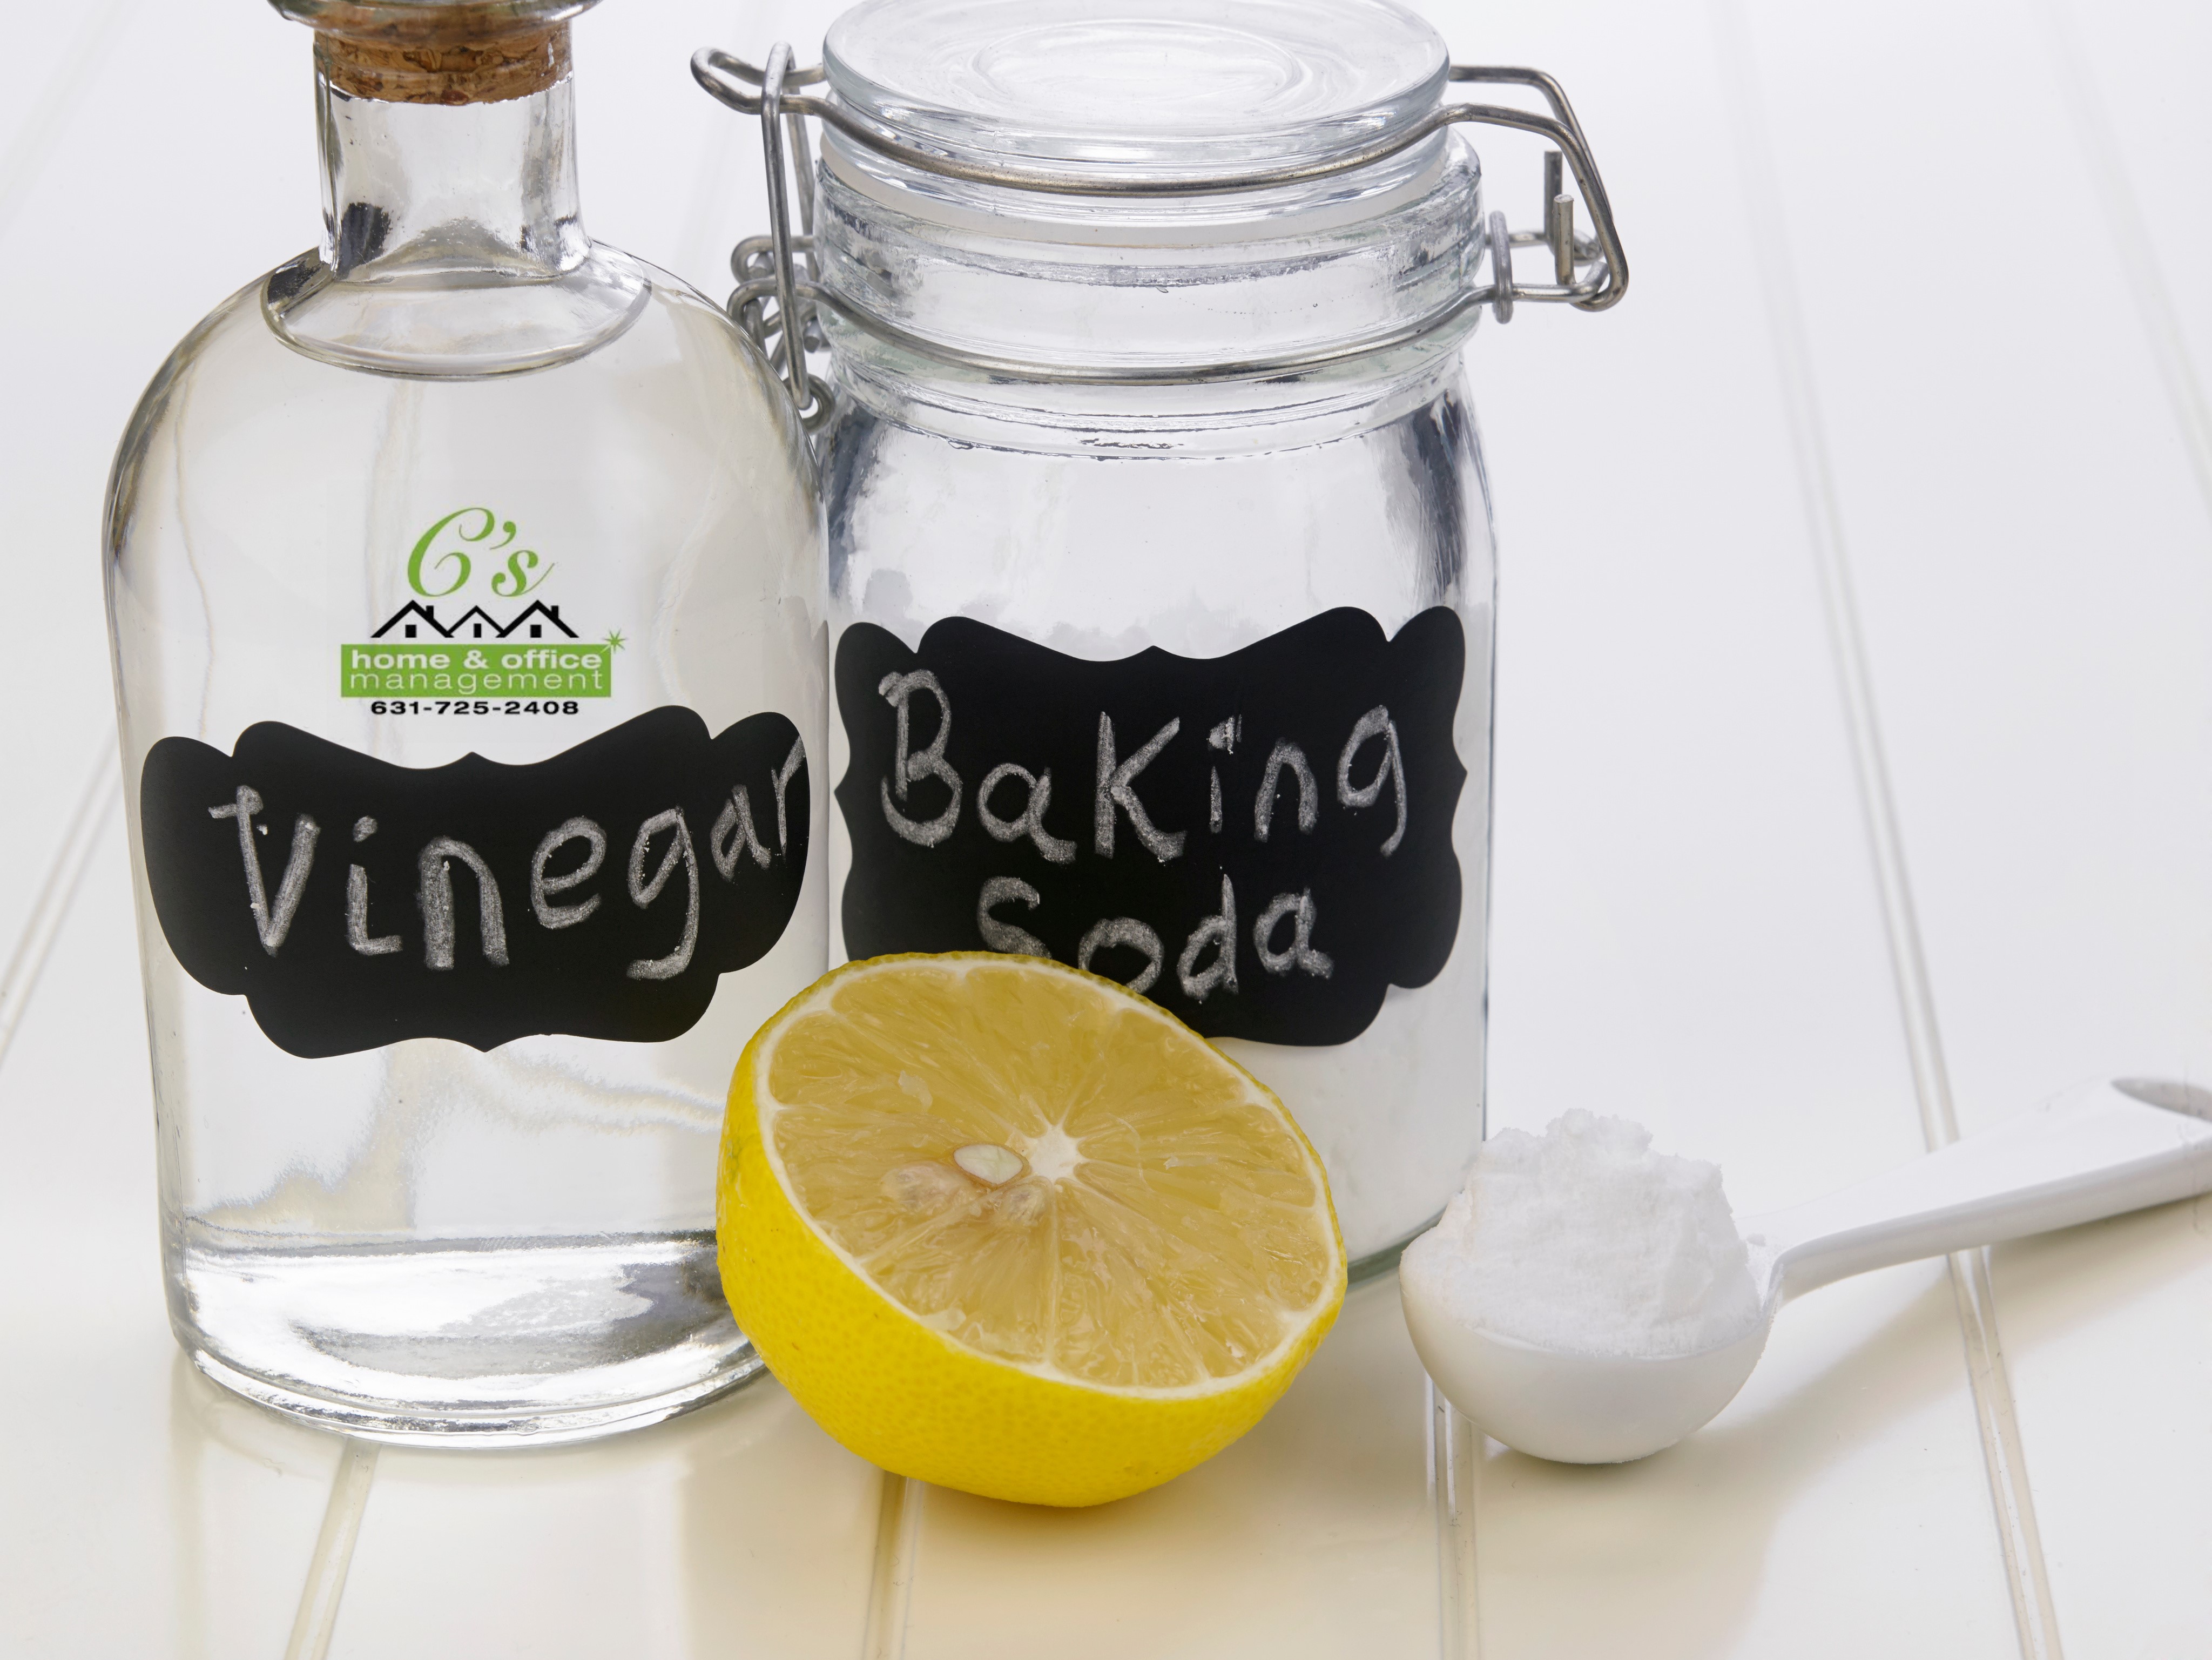 Vinegar, Baking Soda and Lemon for healthy household cleaning